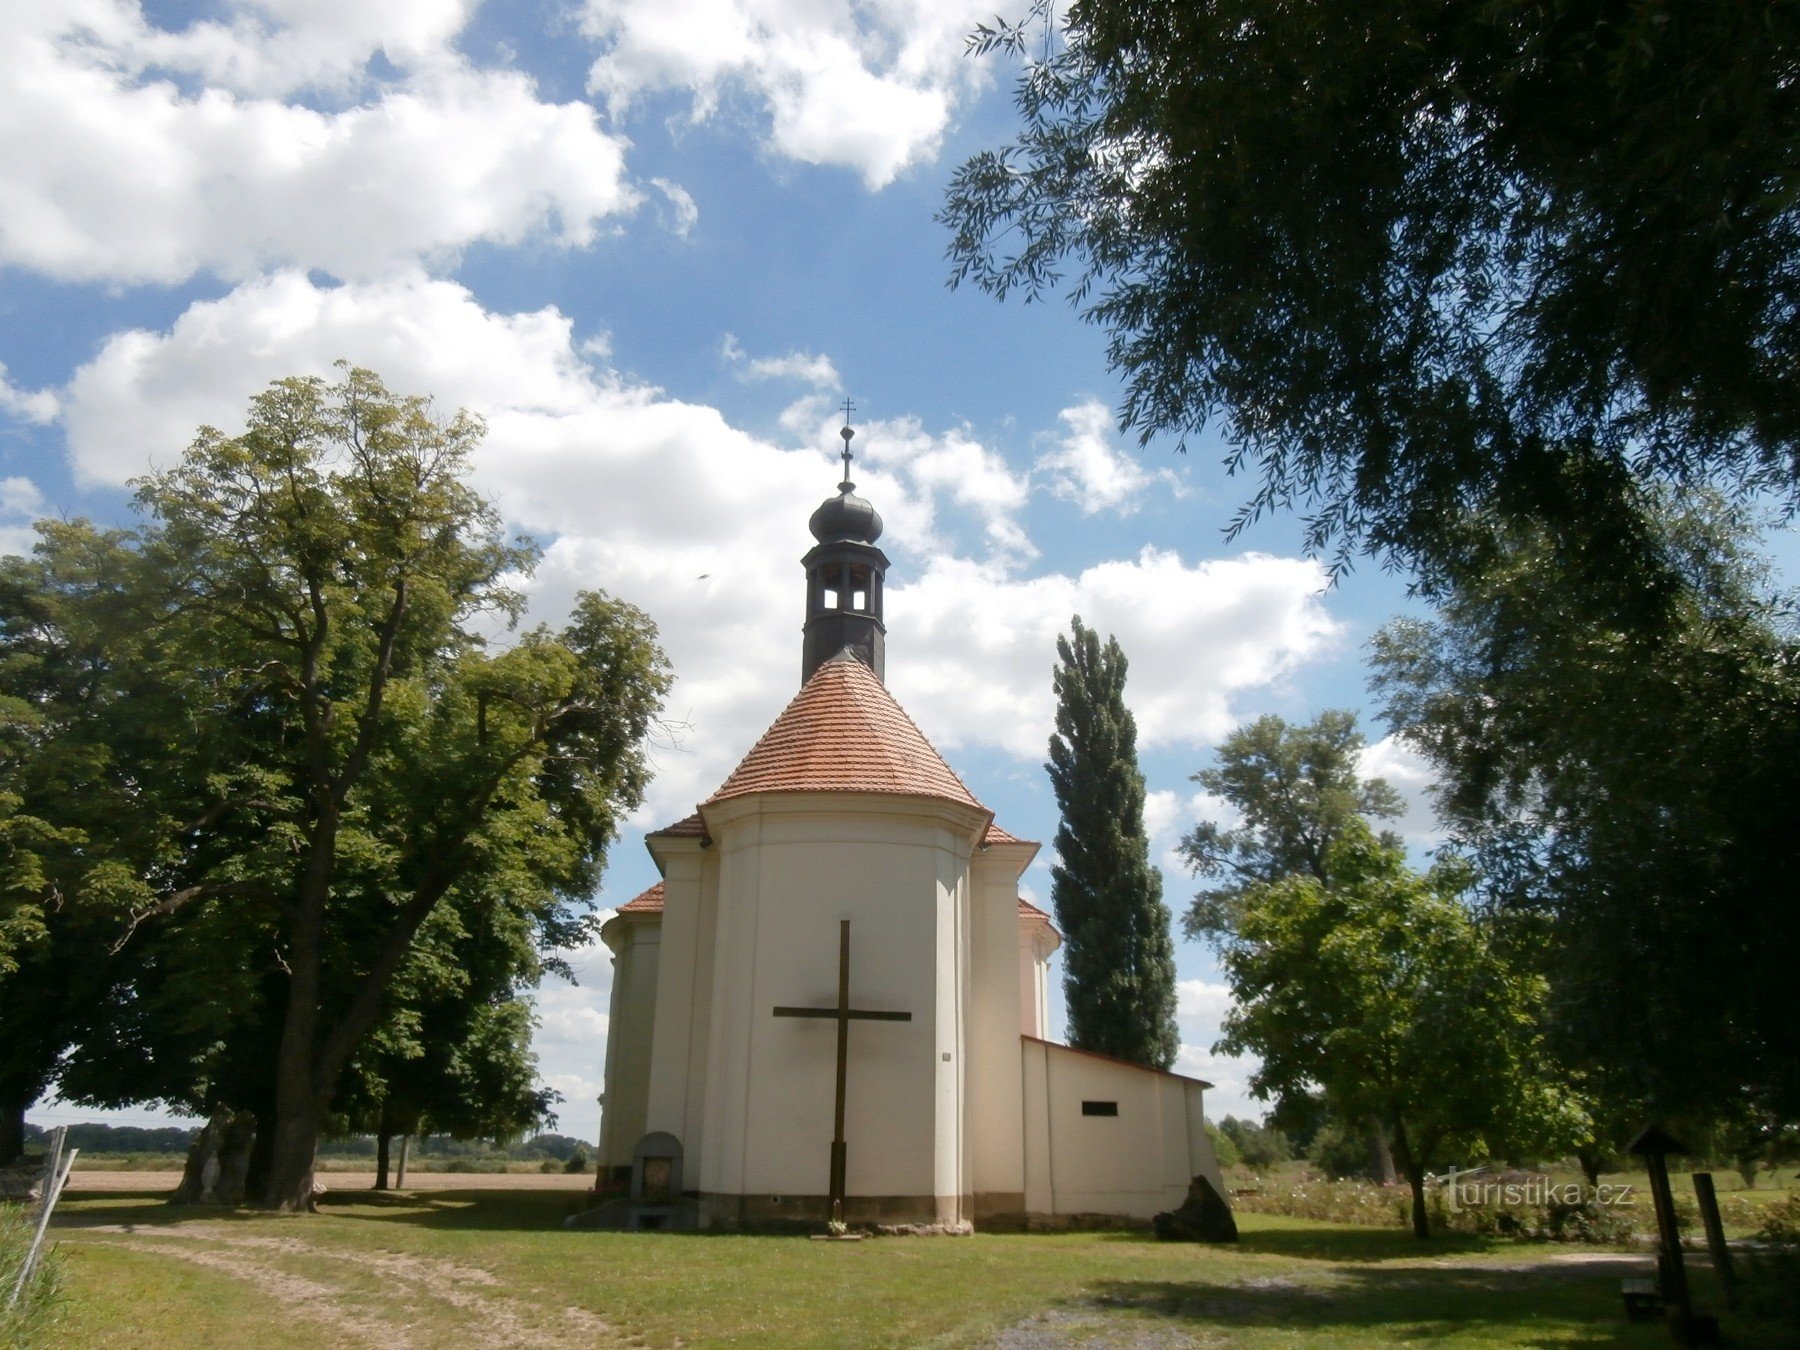 En annan pärla i Křešice - pilgrimsfärdskyrkan för P. Marys besök